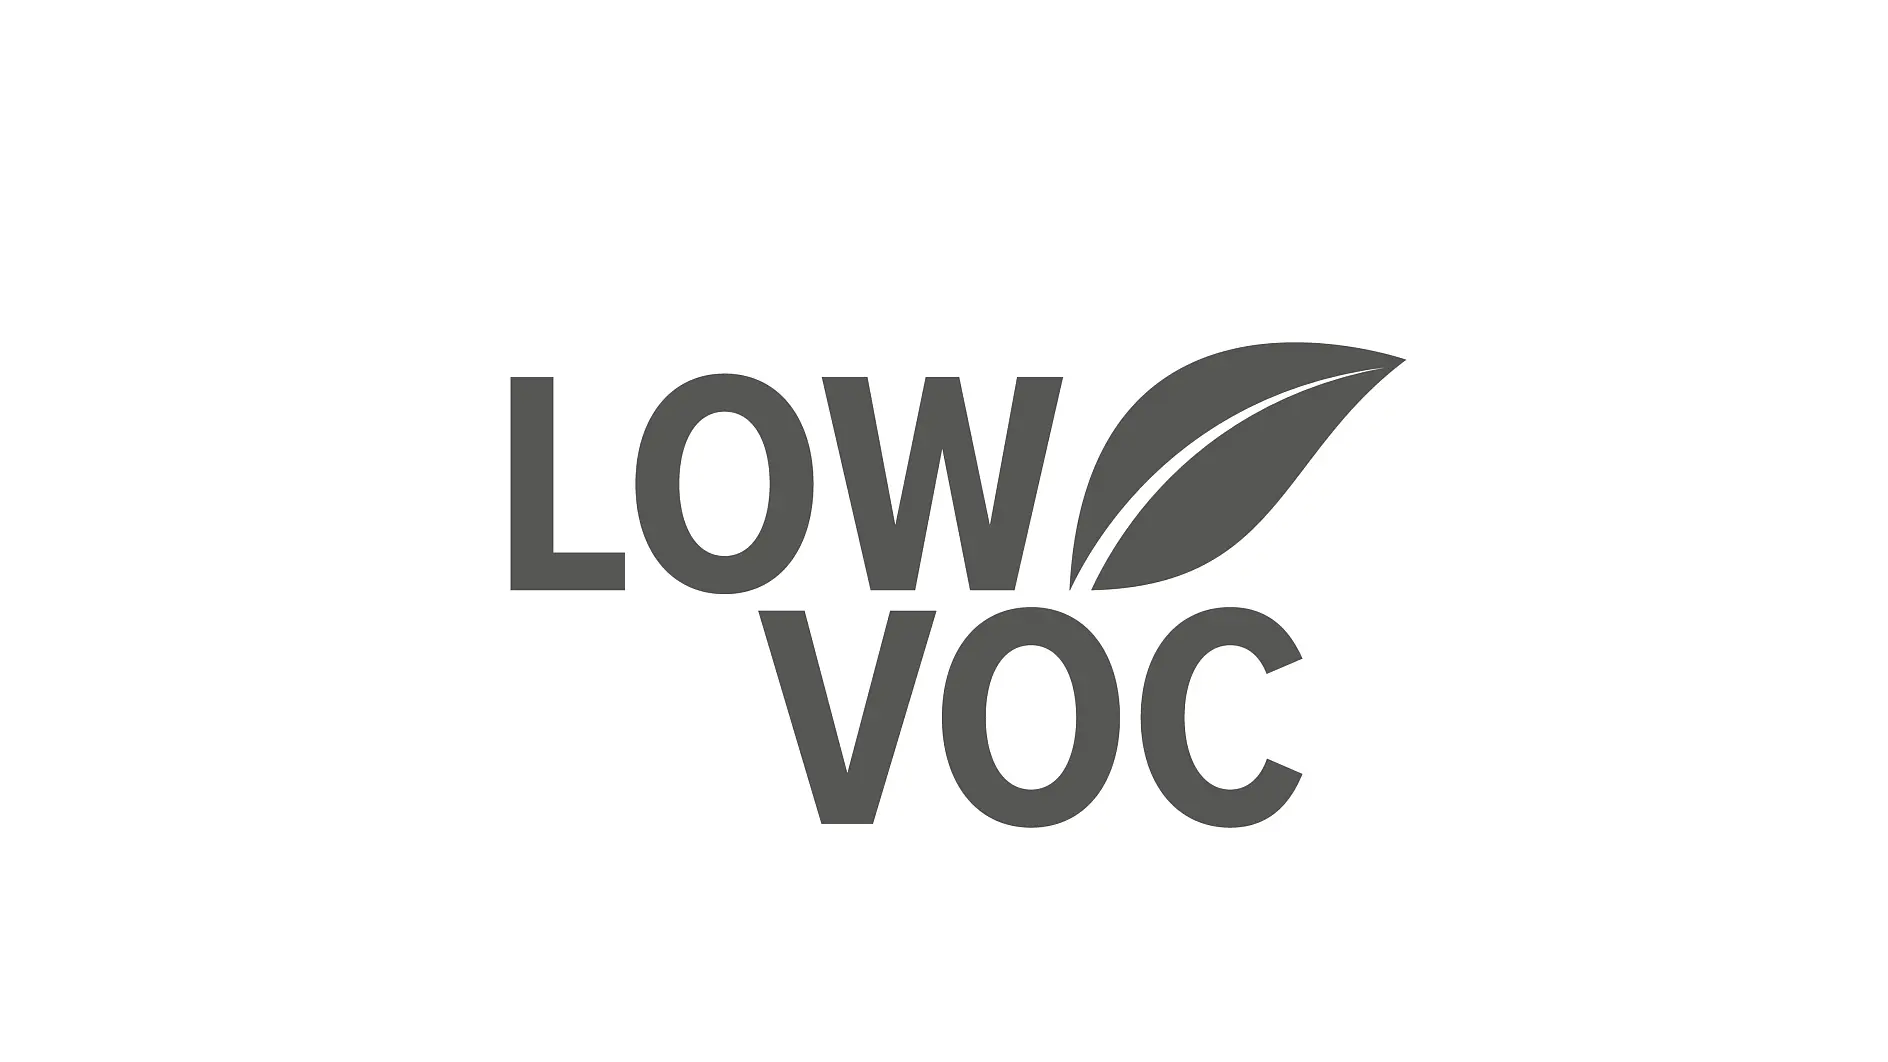 Low Voc